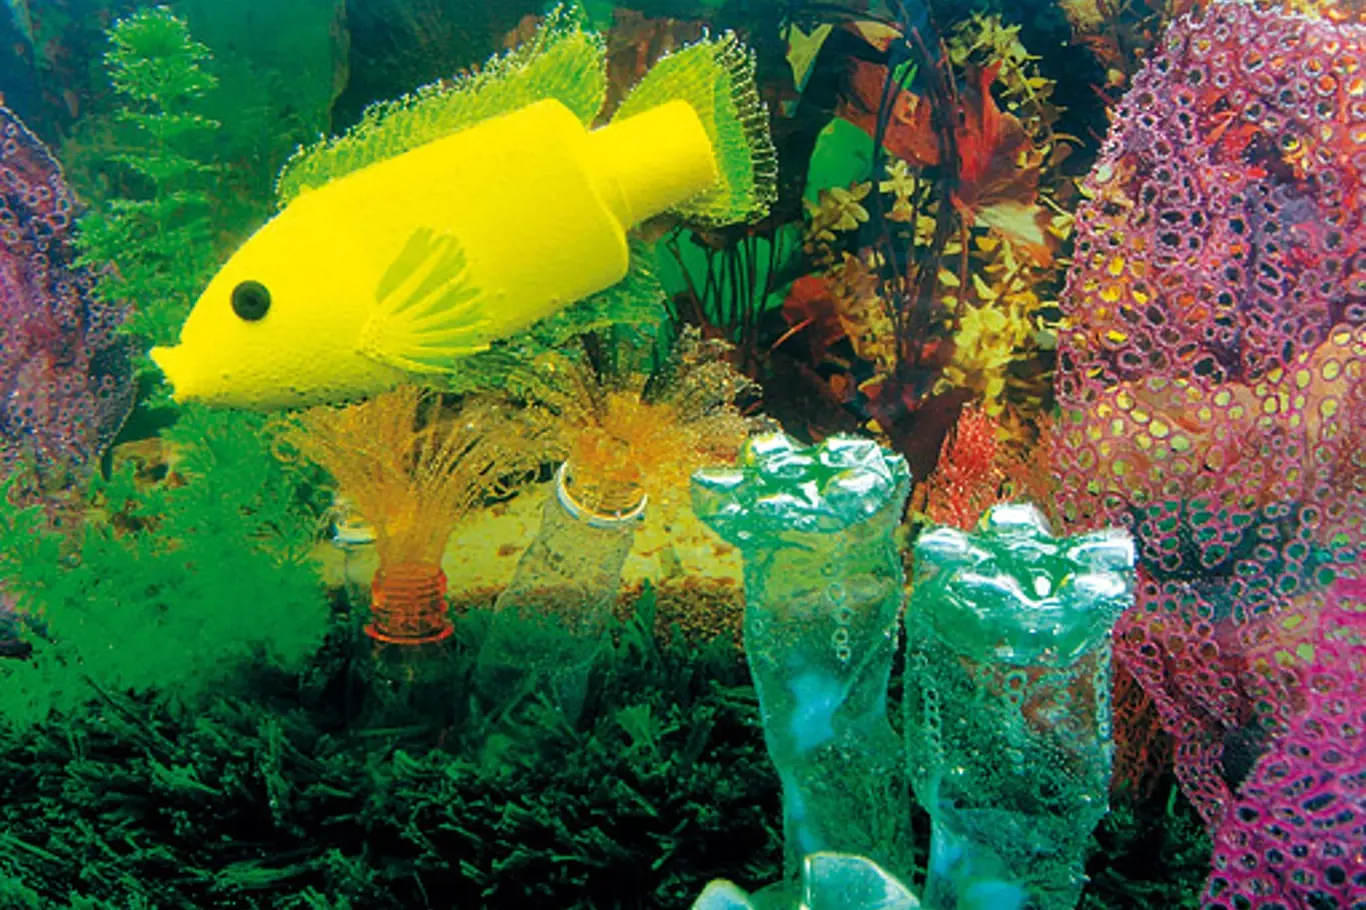 Cichlidka v akváriu – inspirací byla v kontejneru nalezená žlutá lahvička od krmiva pro rybičky